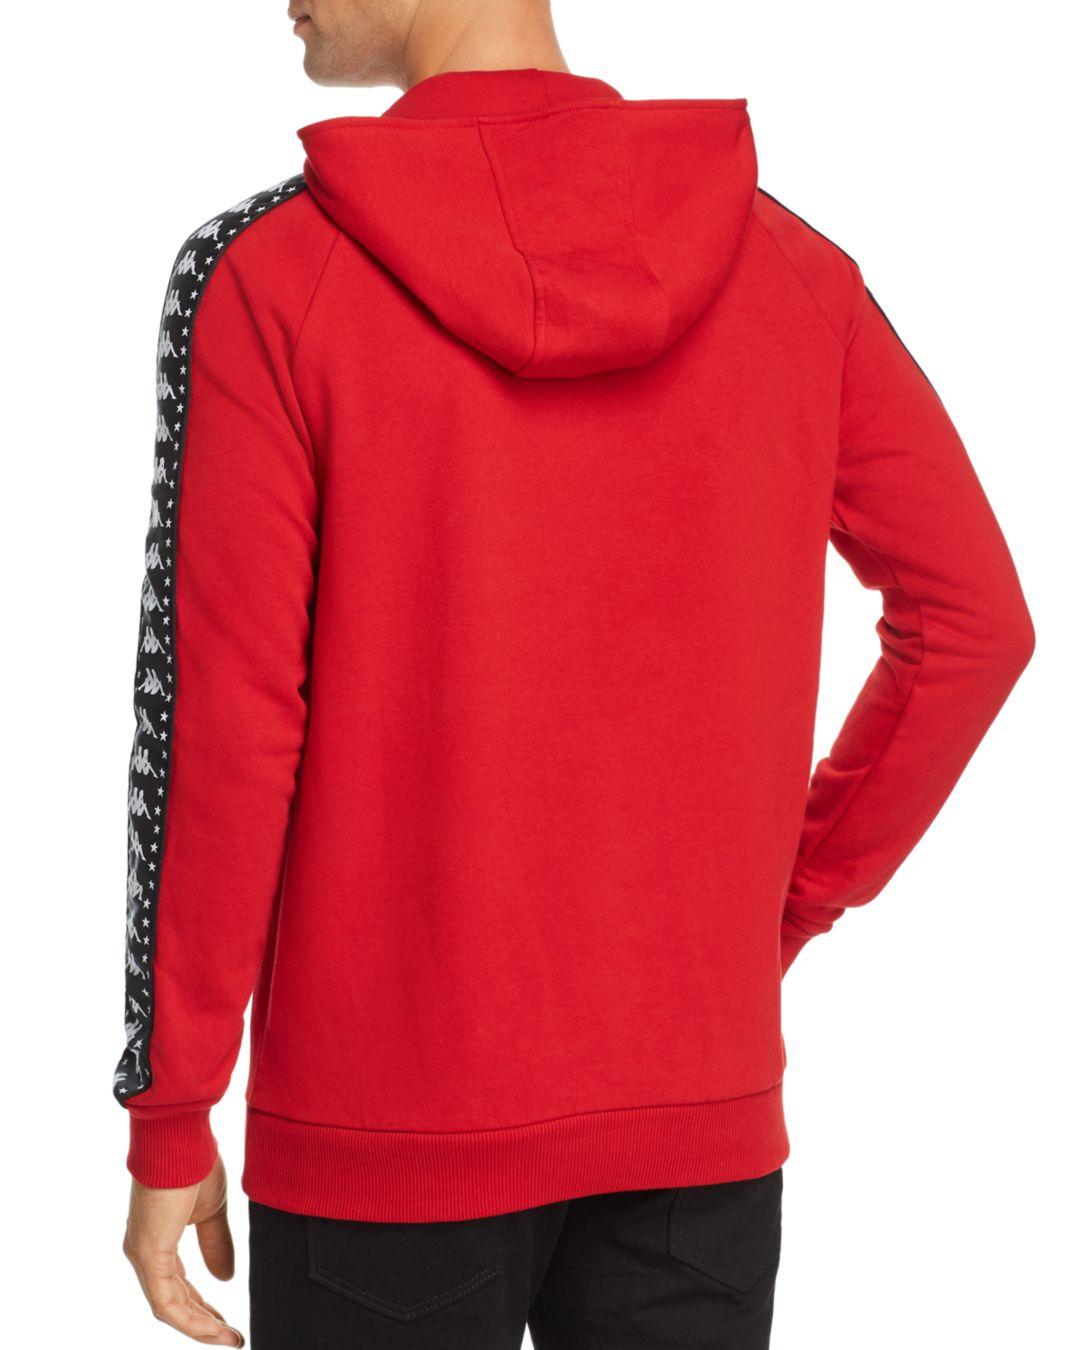 Kappa Authentic Bzaleh Embossed - Logo Hooded Sweatshirt in Red/Black ...